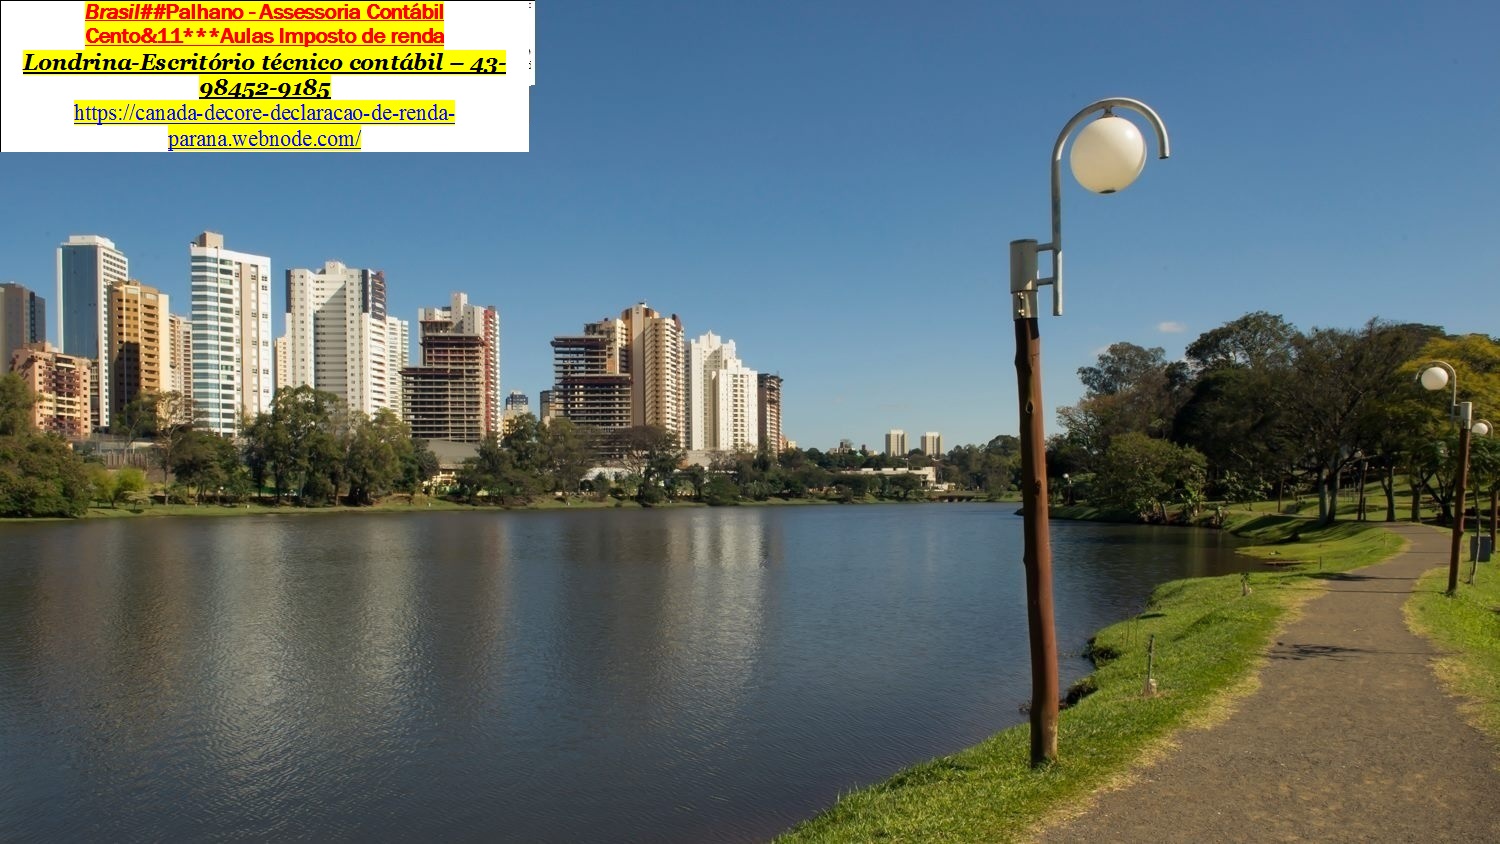 Brasil##Palhano - Assessoria Contabil
Cento&11* * *Aulas Imposto de renda
Londrina-Escritério técnico contabil — 43-
98452-9185

https 7 canada- decor